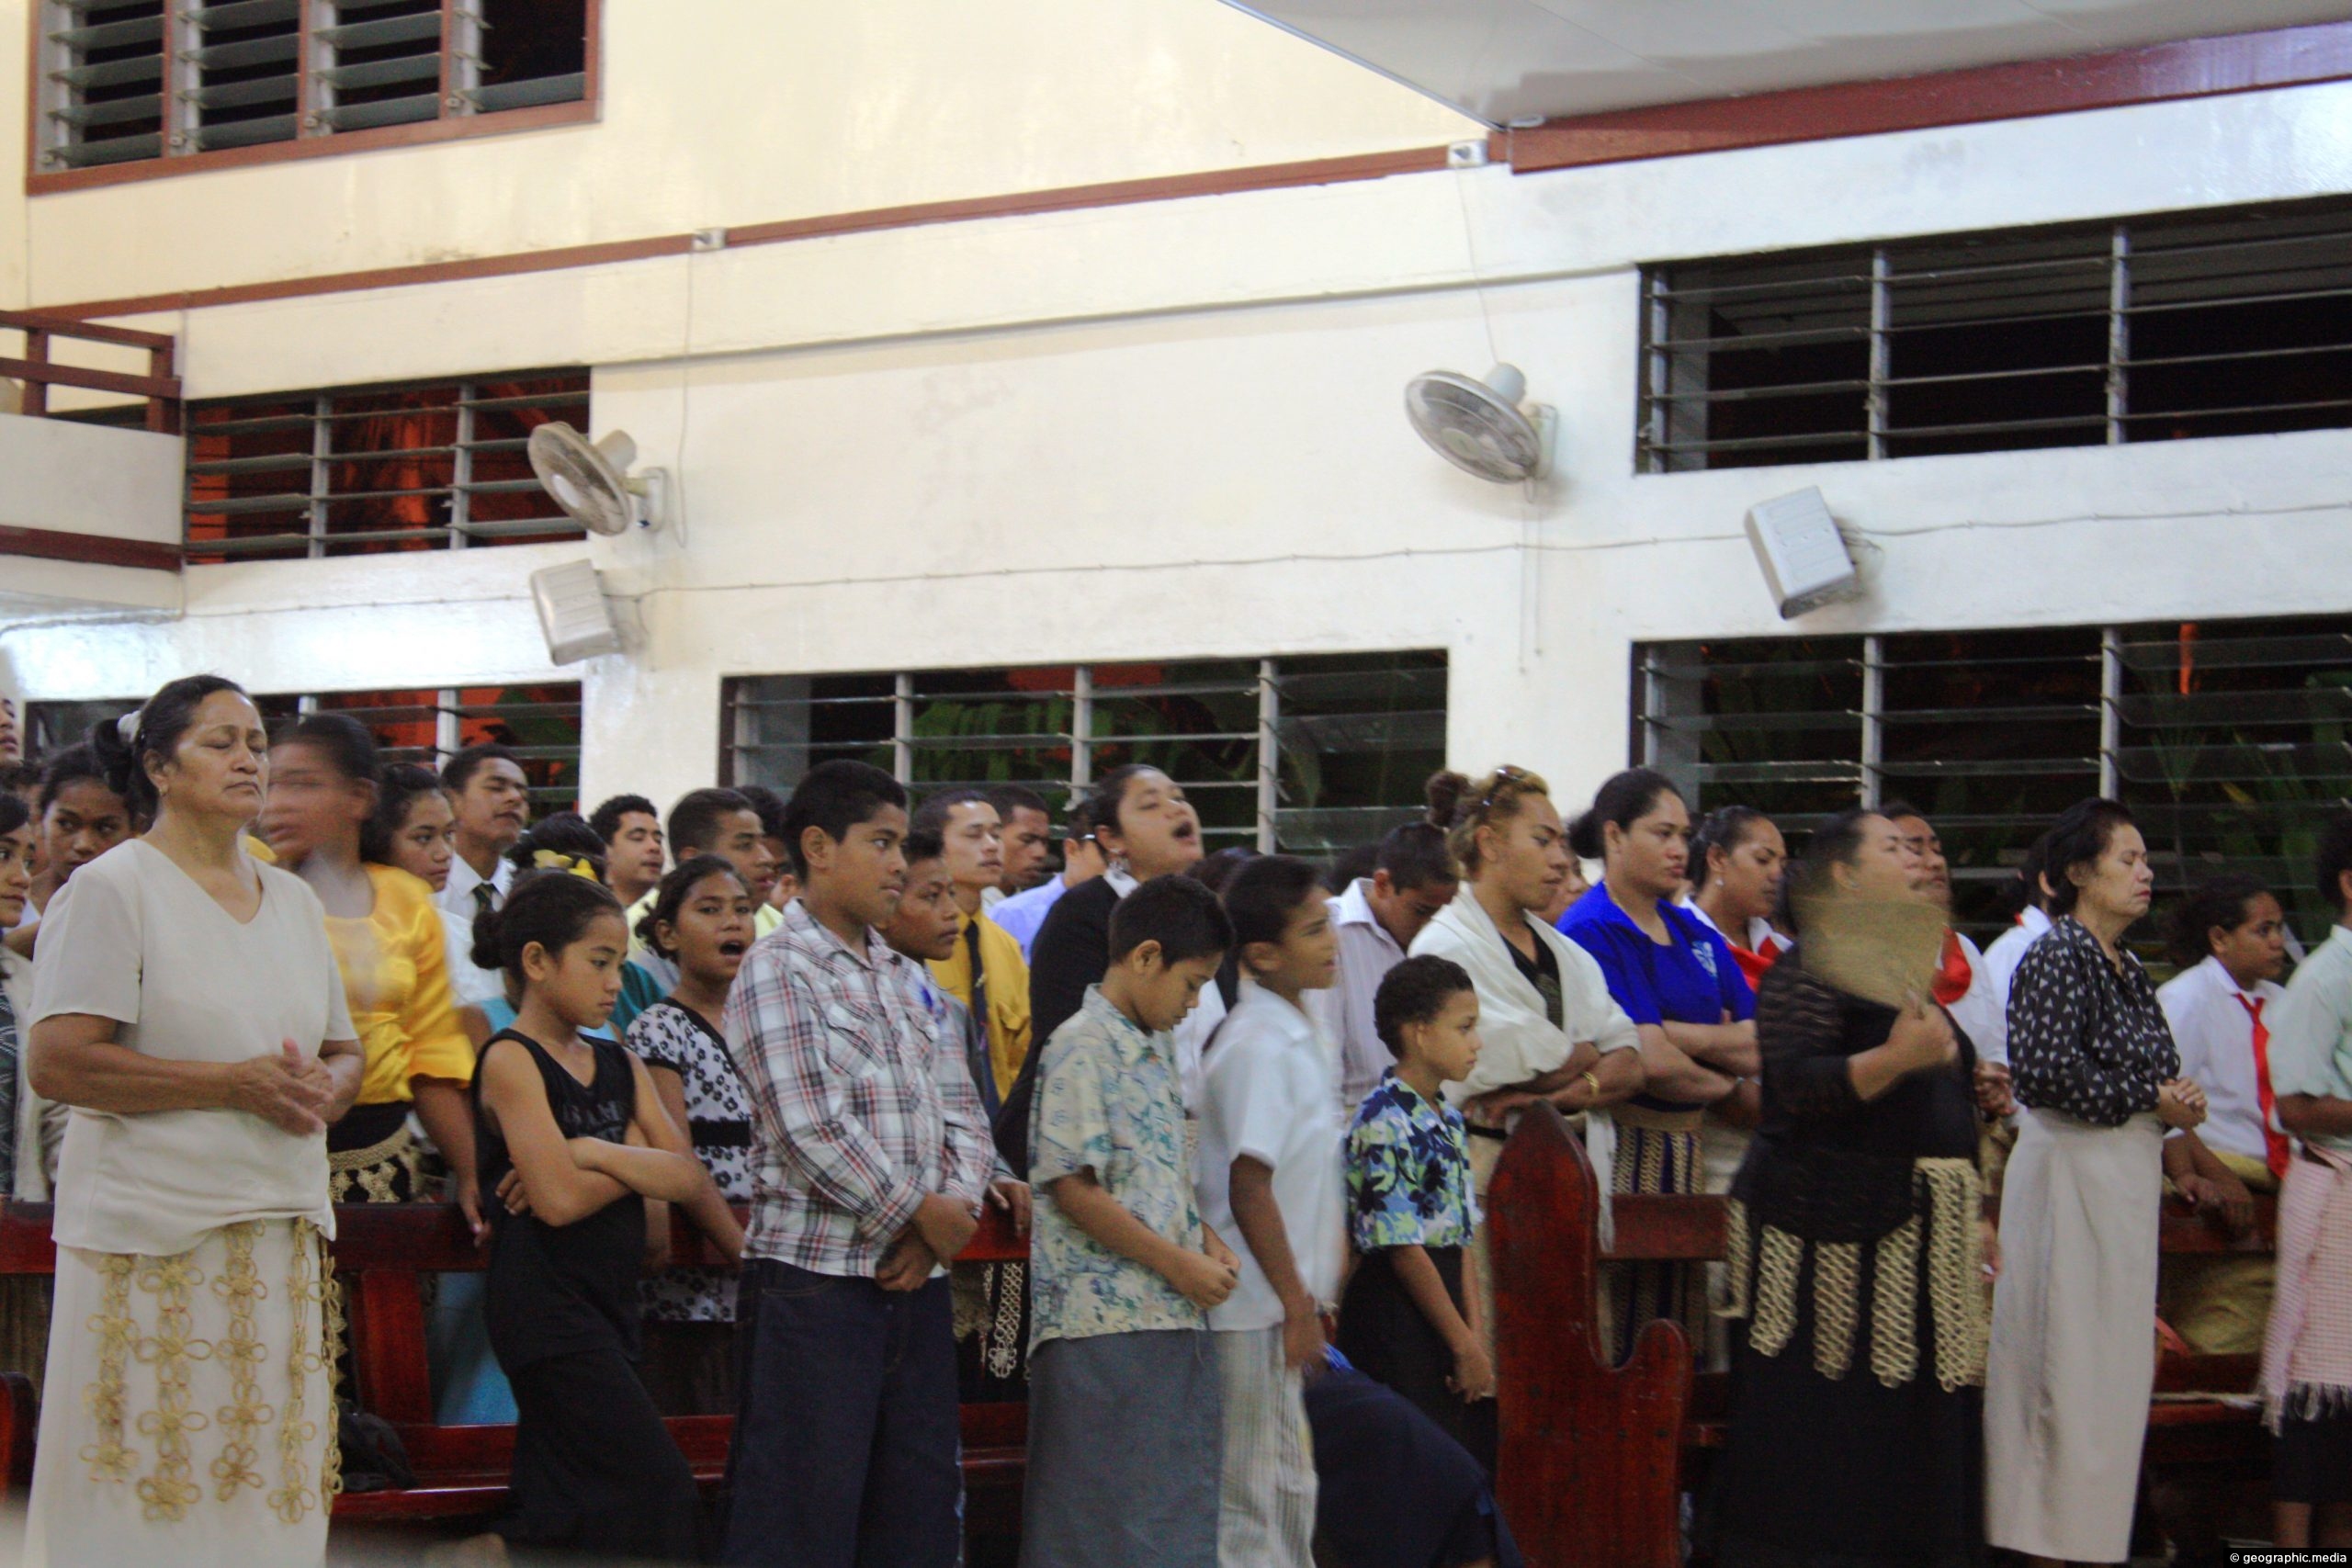 Church service in Nukualofa Tonga